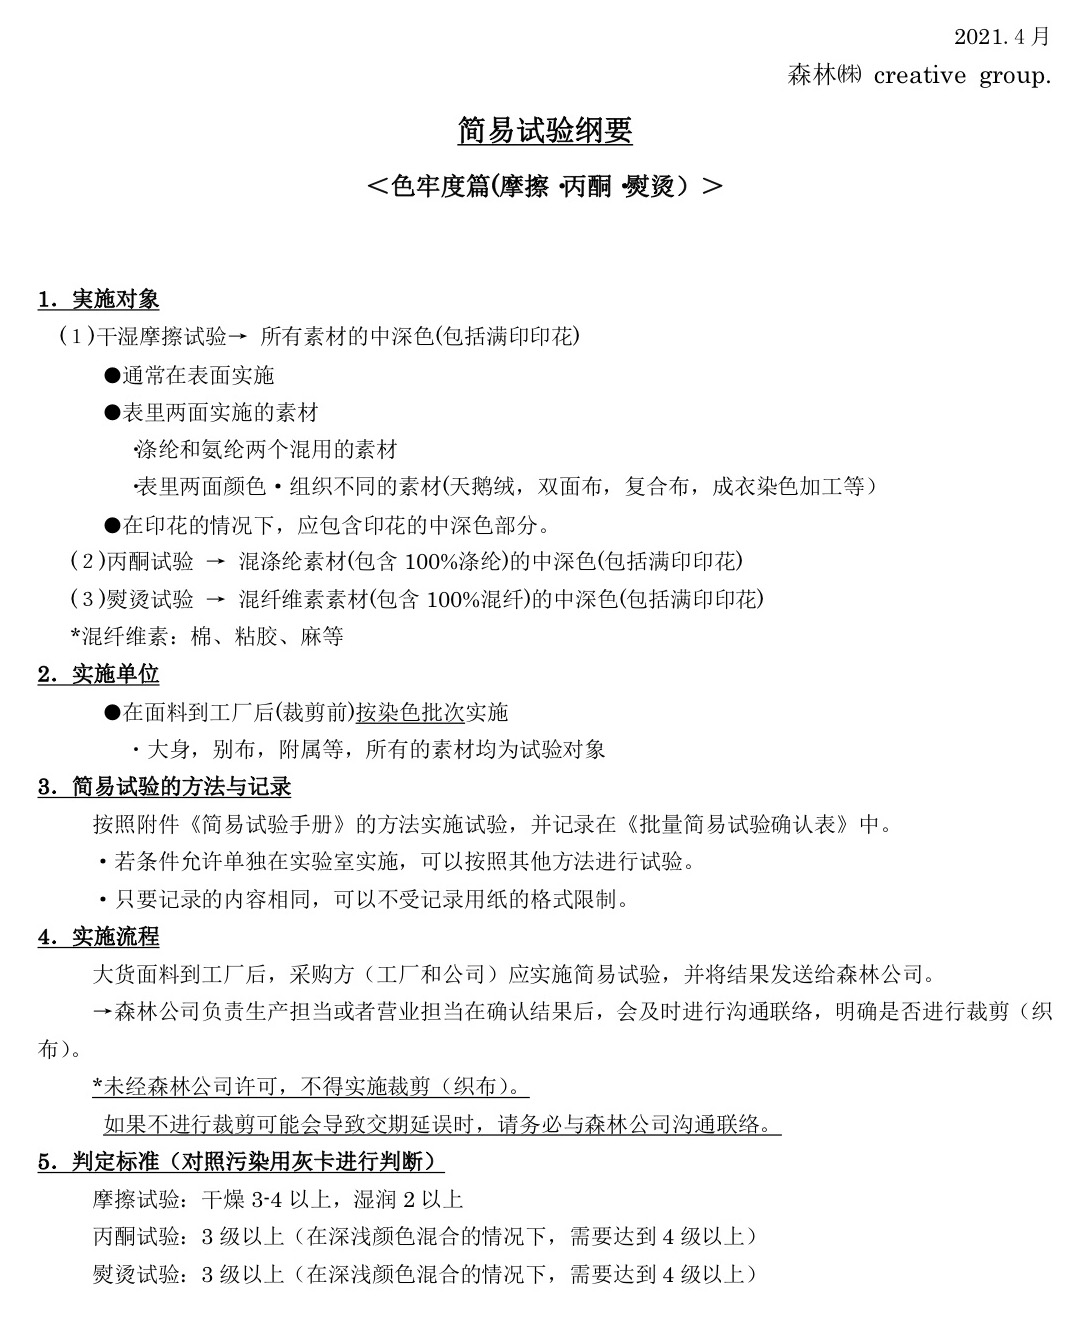 中文 簡易試験要項 2021.4副本.jpg